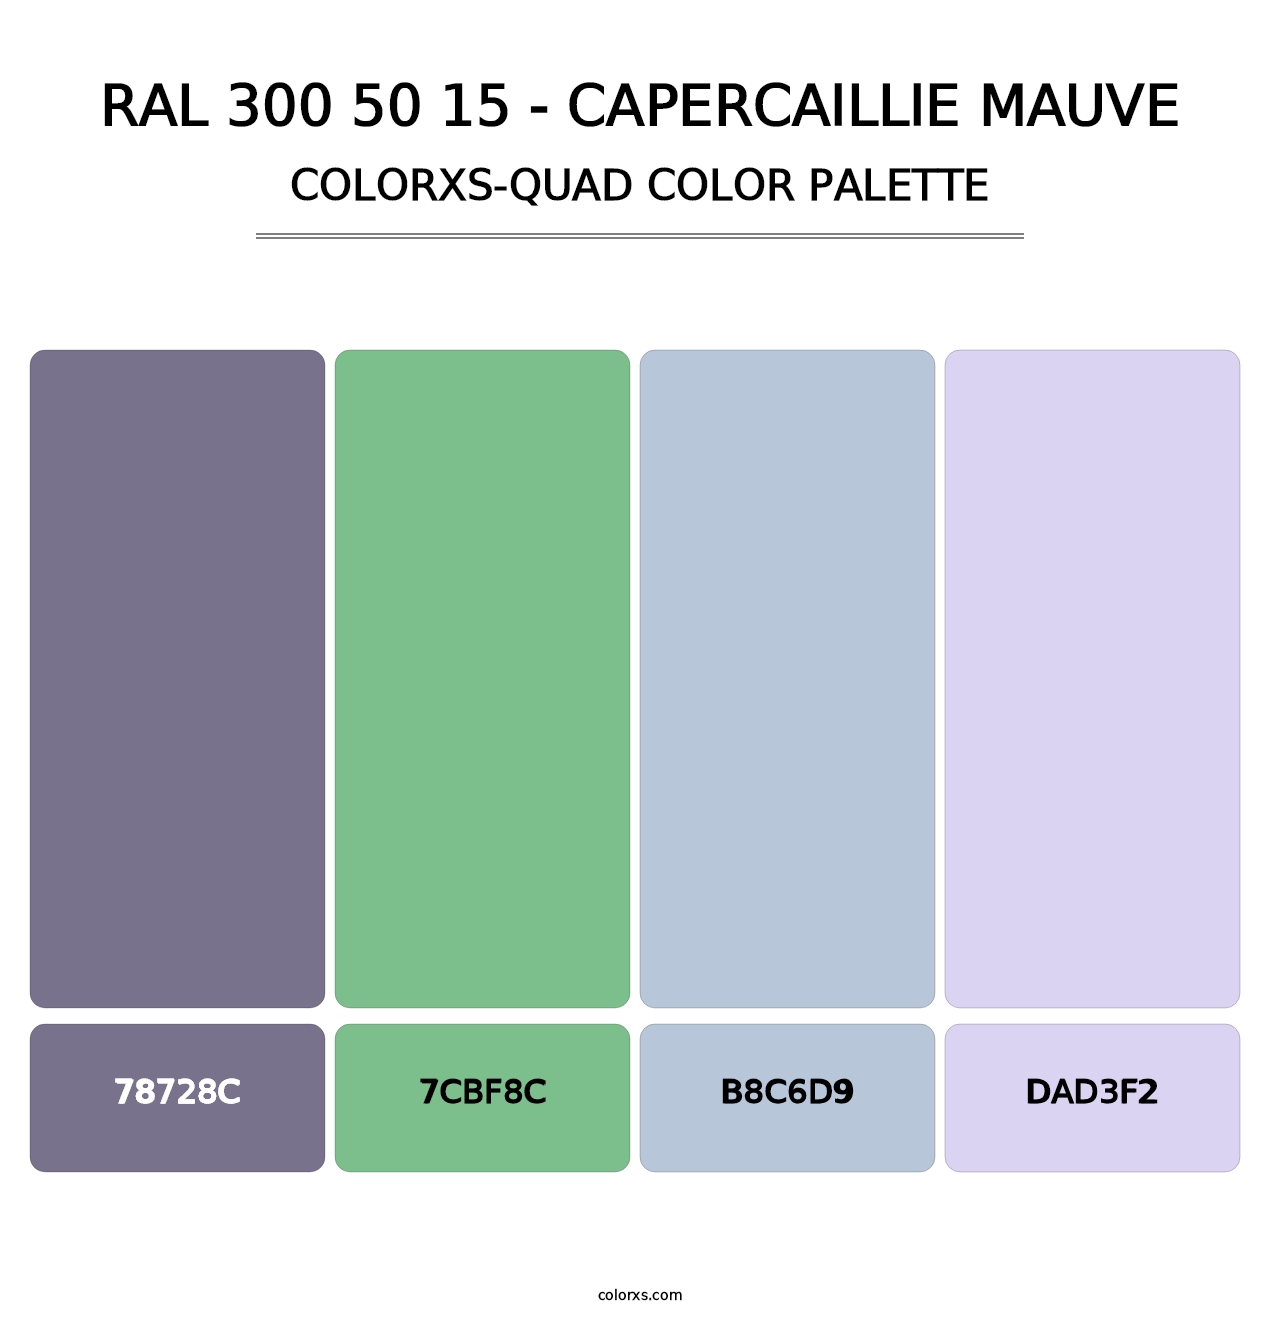 RAL 300 50 15 - Capercaillie Mauve - Colorxs Quad Palette